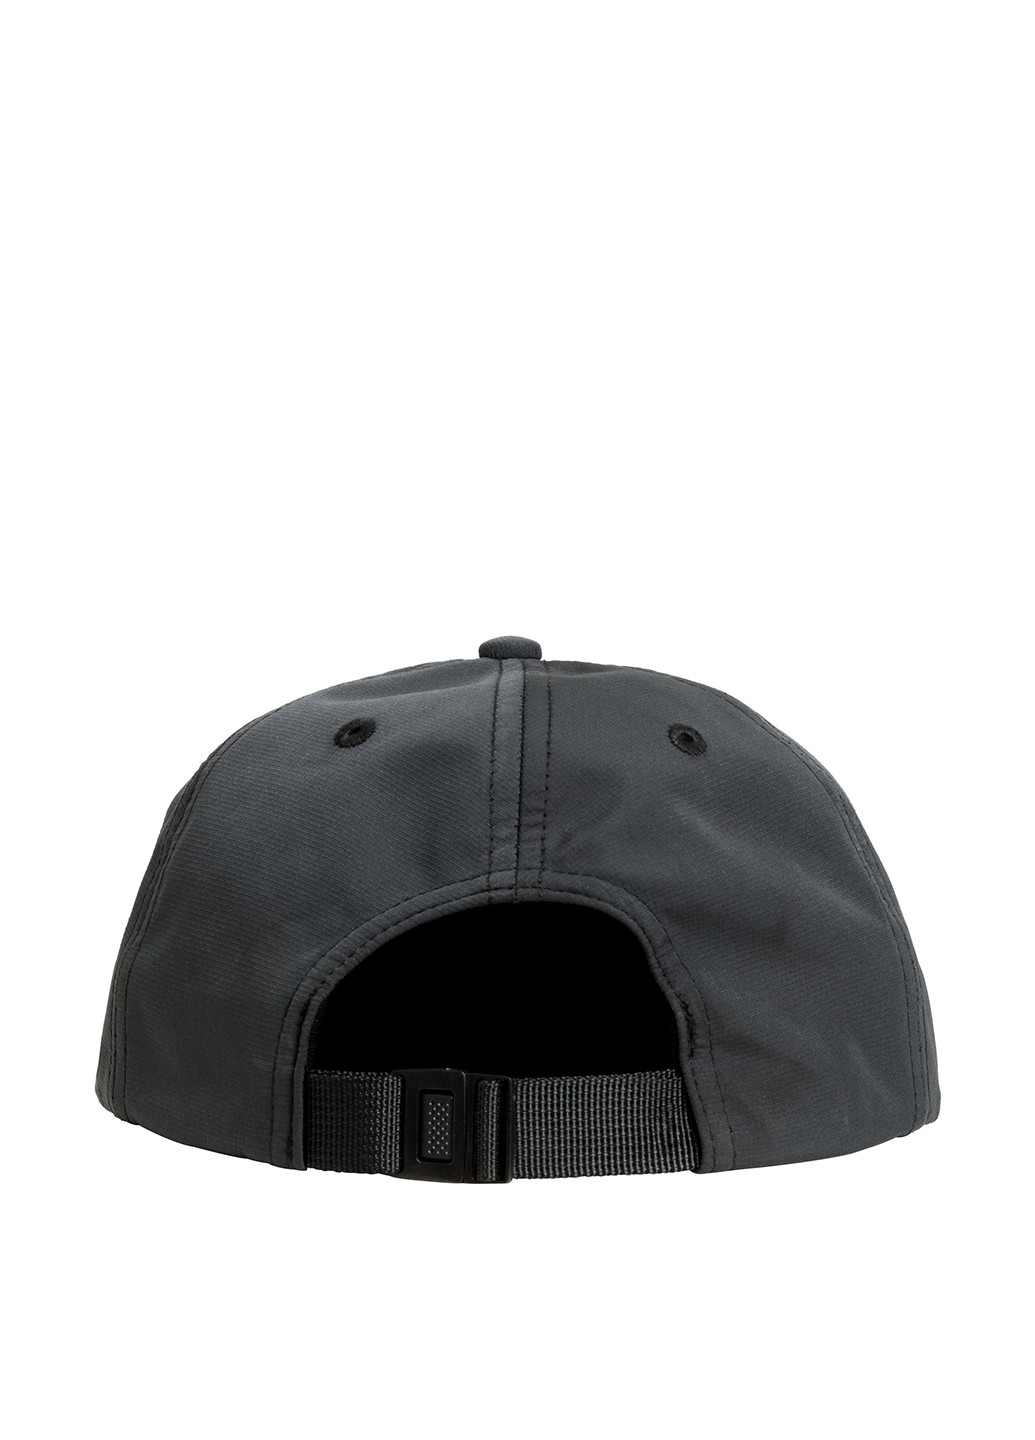 Кепка H&M кепка с прямым козырьком надпись тёмно-серая кэжуал полиэстер, полиамид